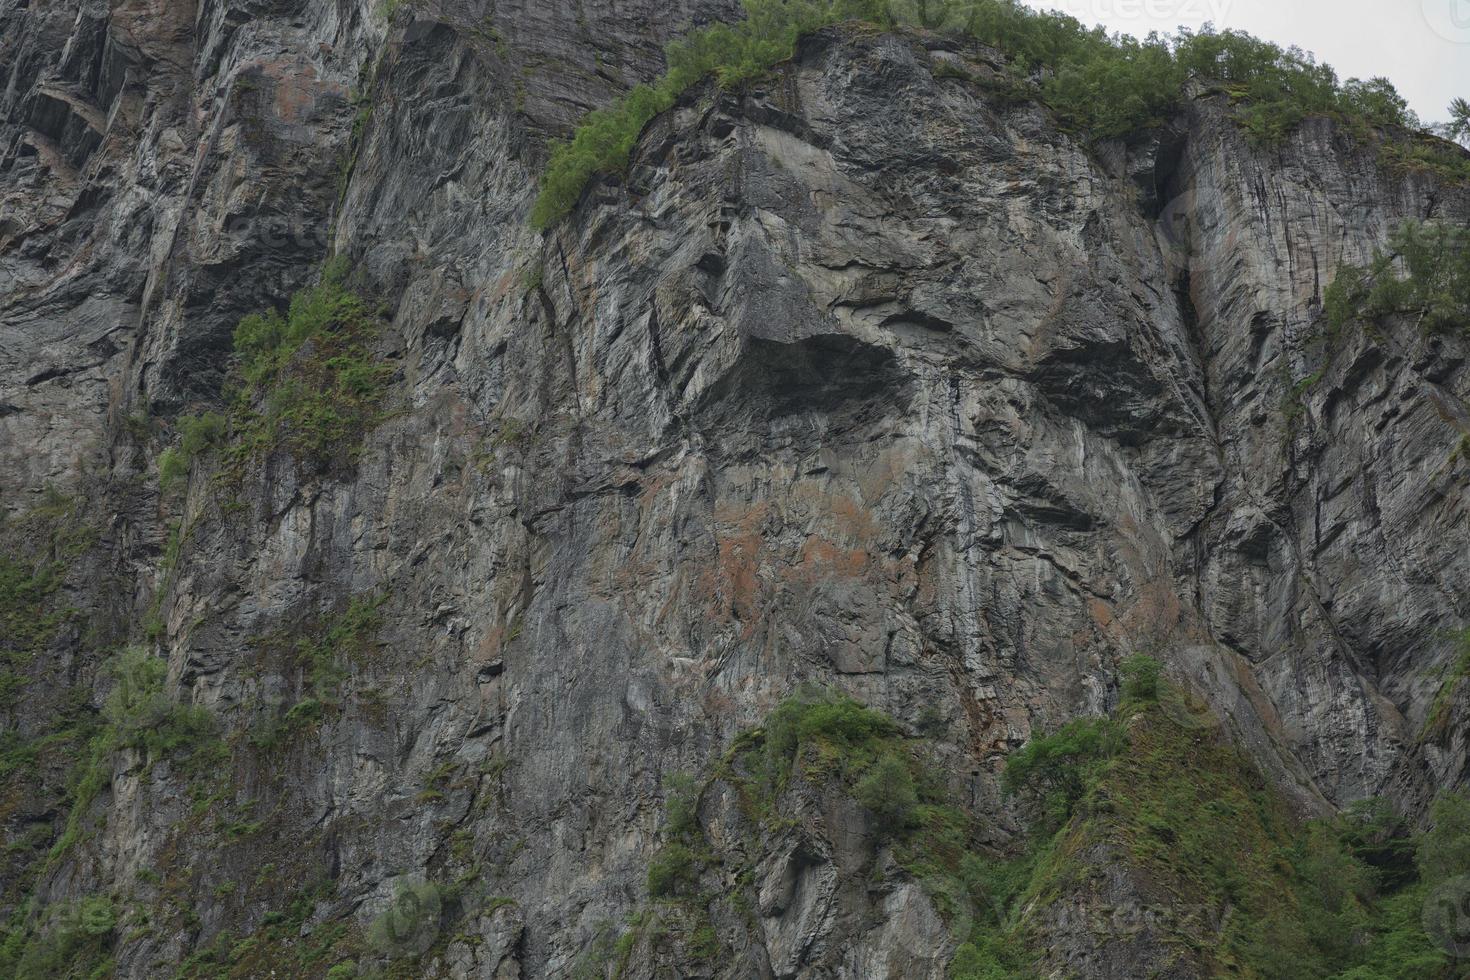 troll face sur une falaise du geirangerfjord, norvège photo